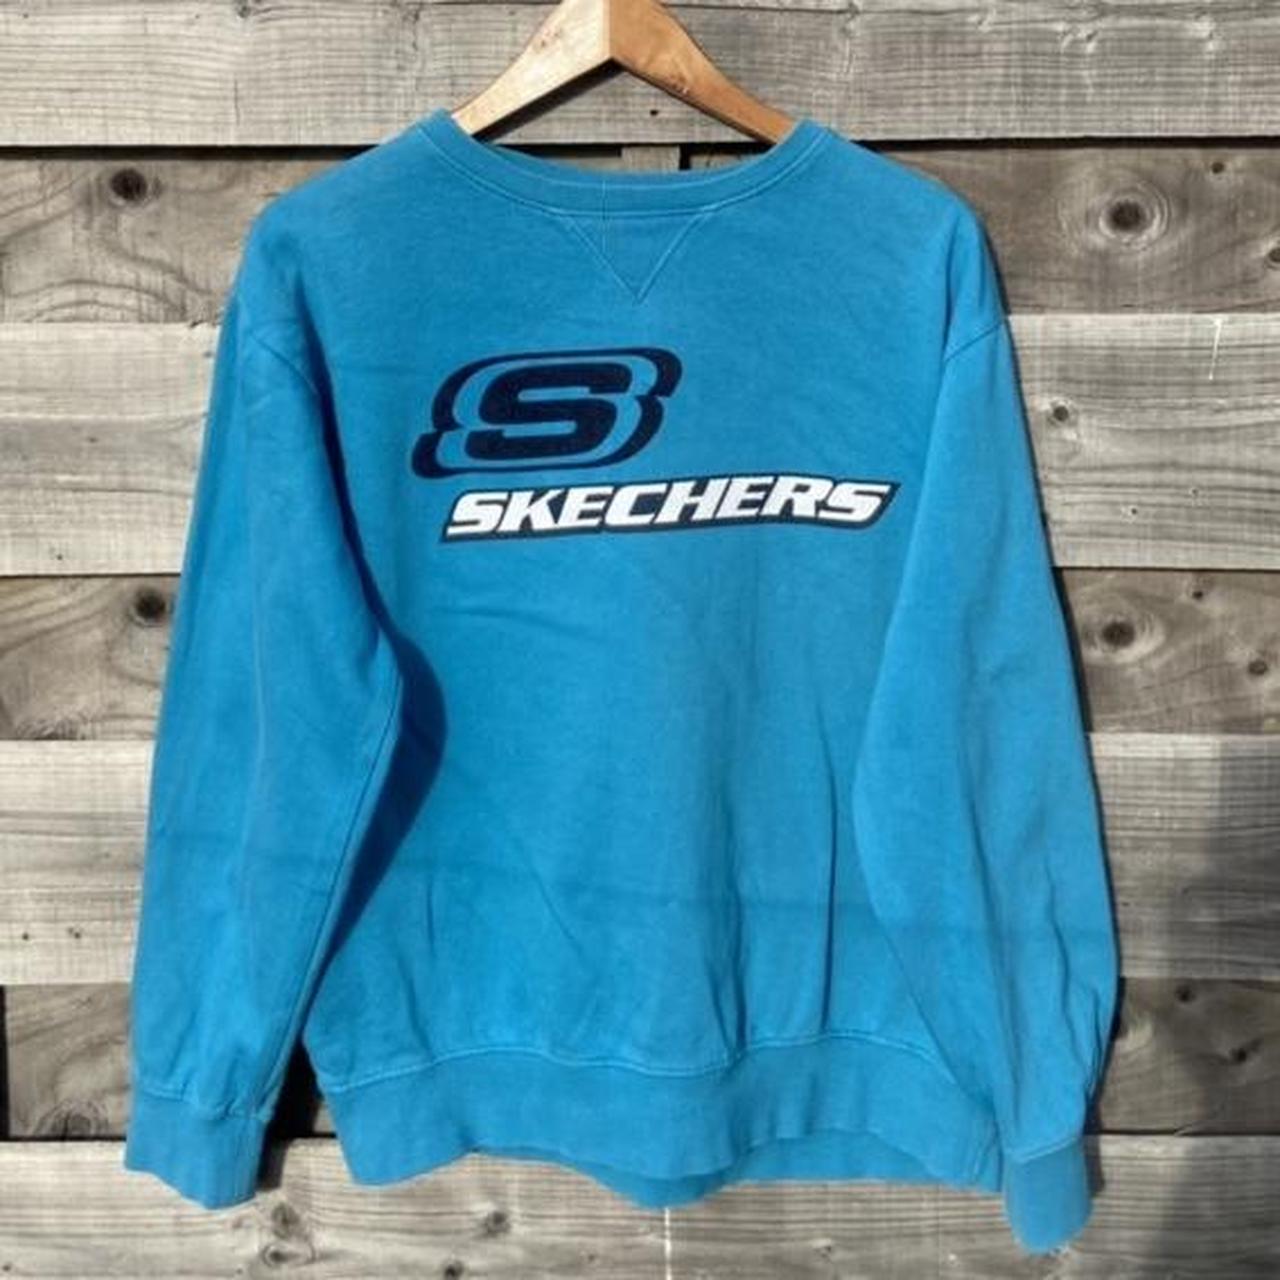 Skechers Men's Blue Sweatshirt | Depop